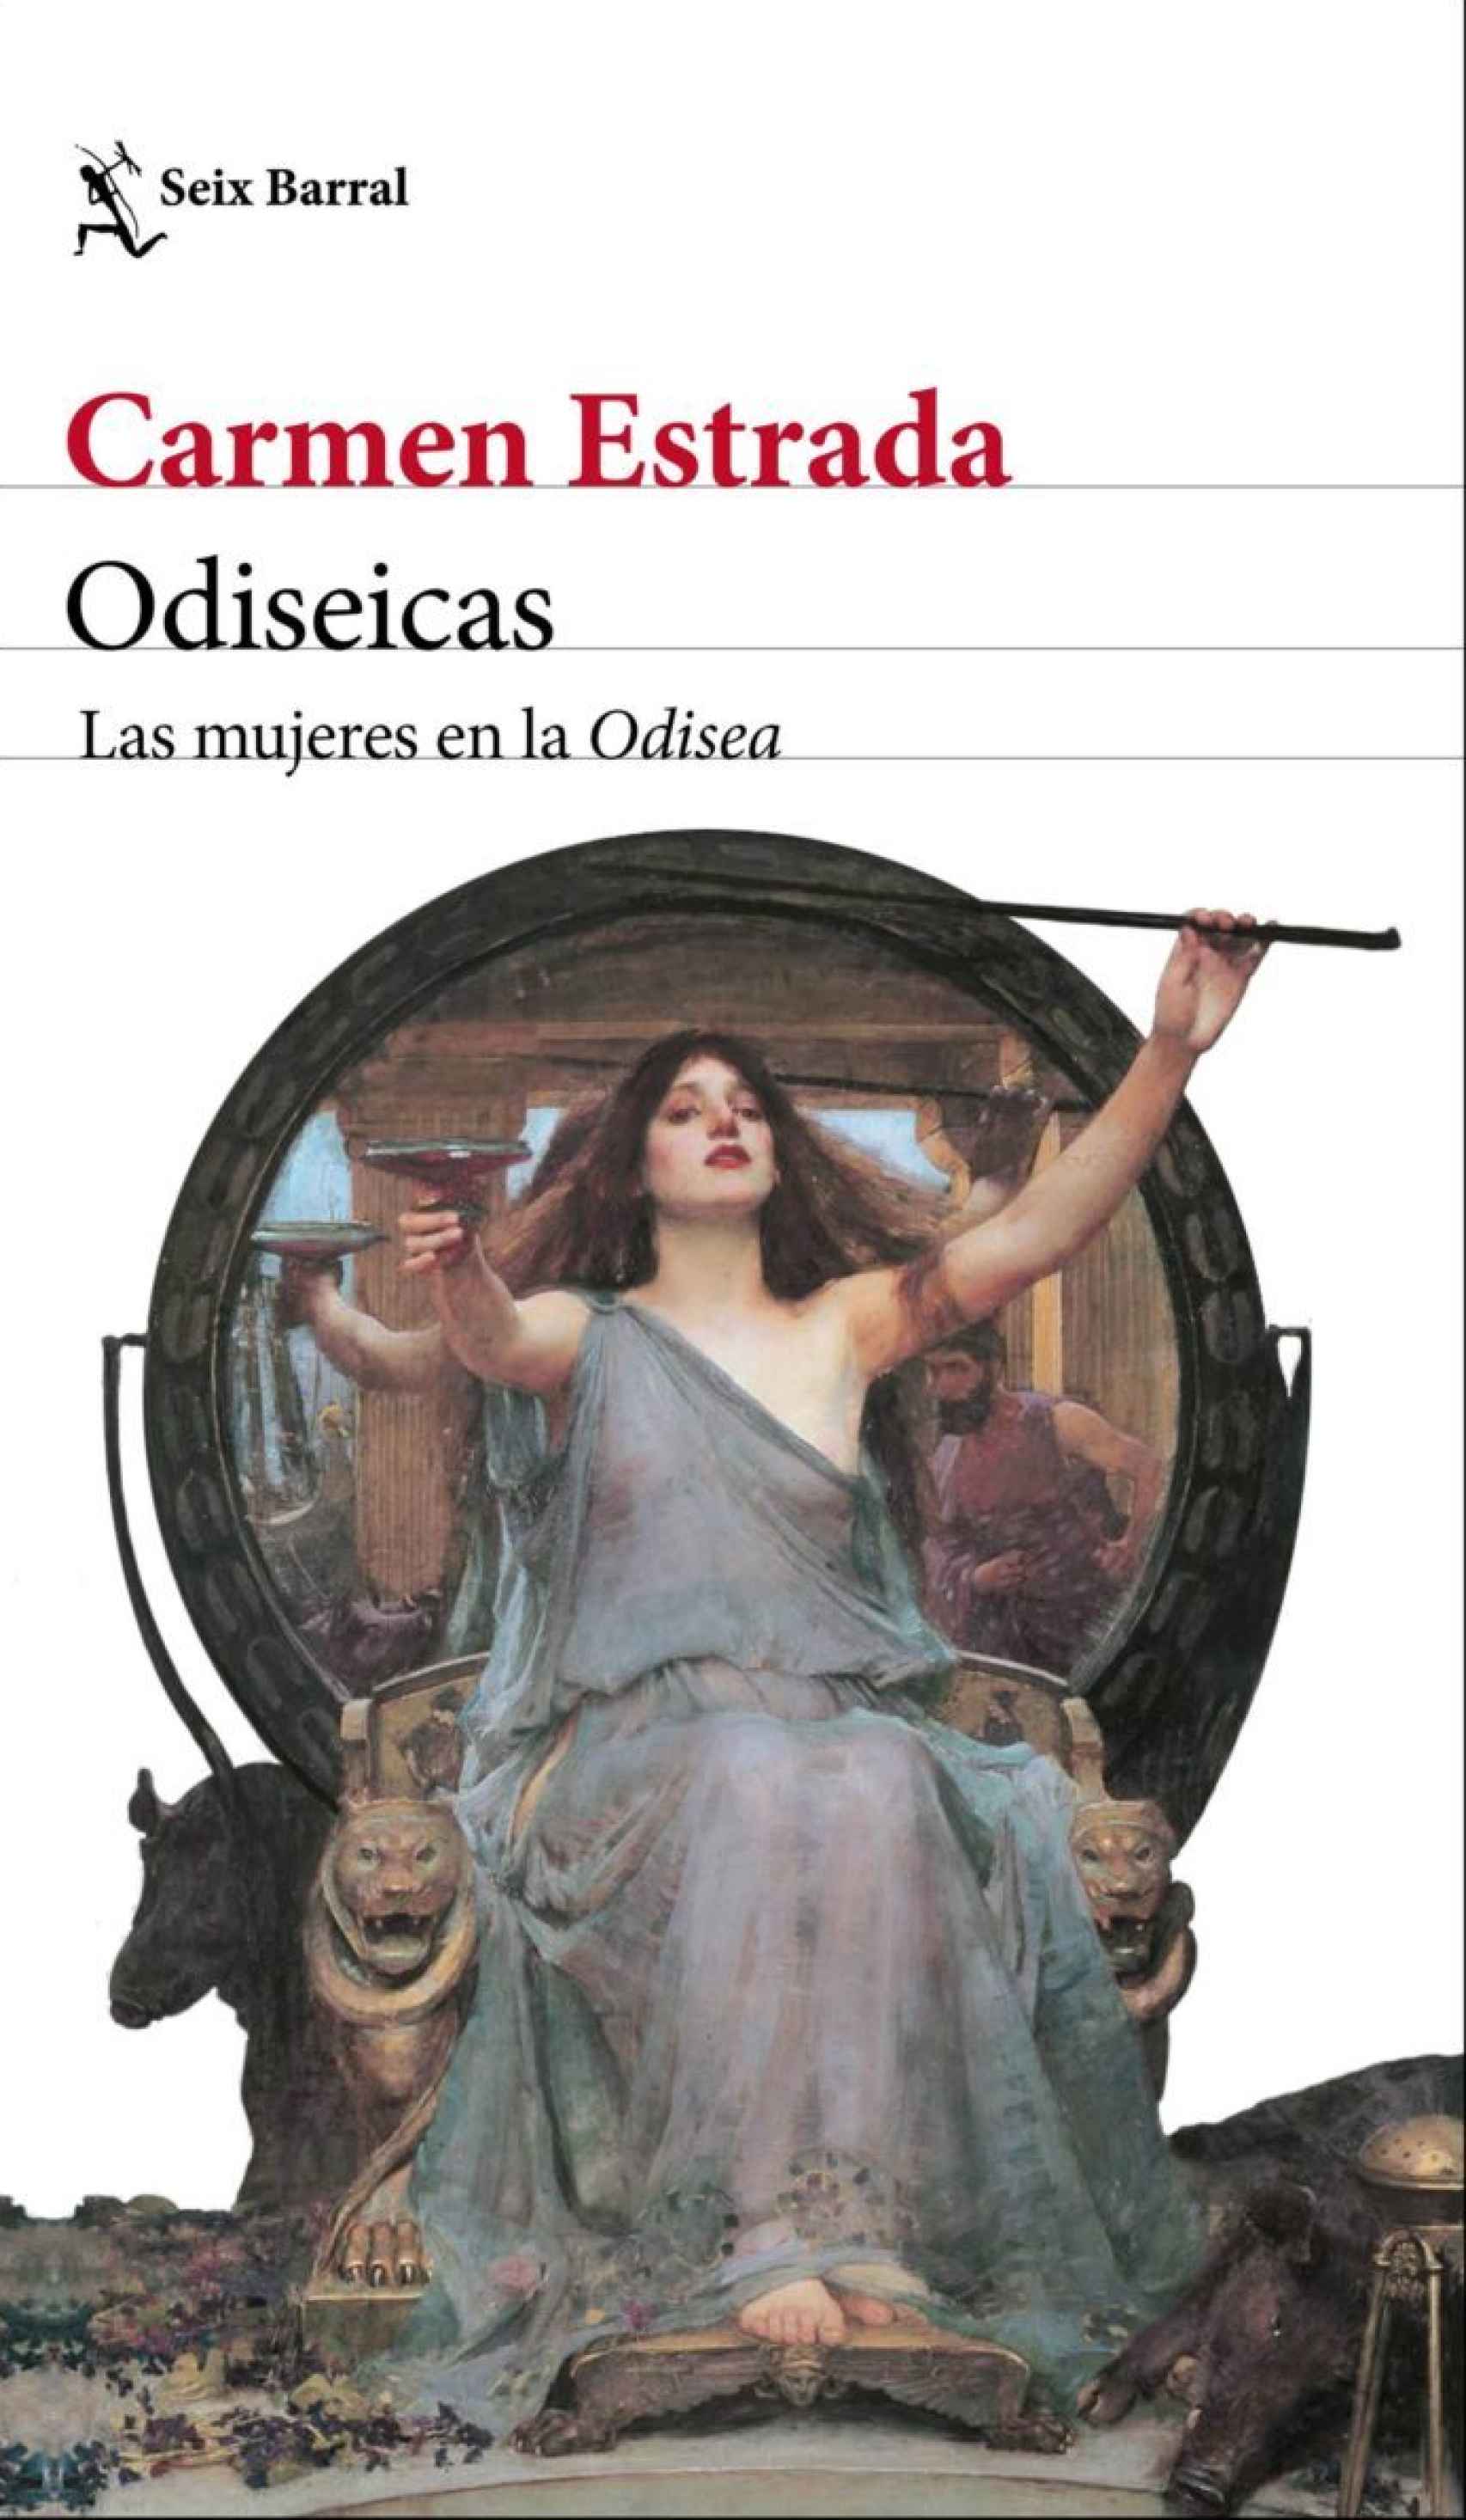 Portada de 'Odiseicas' de Carmen Estrada.